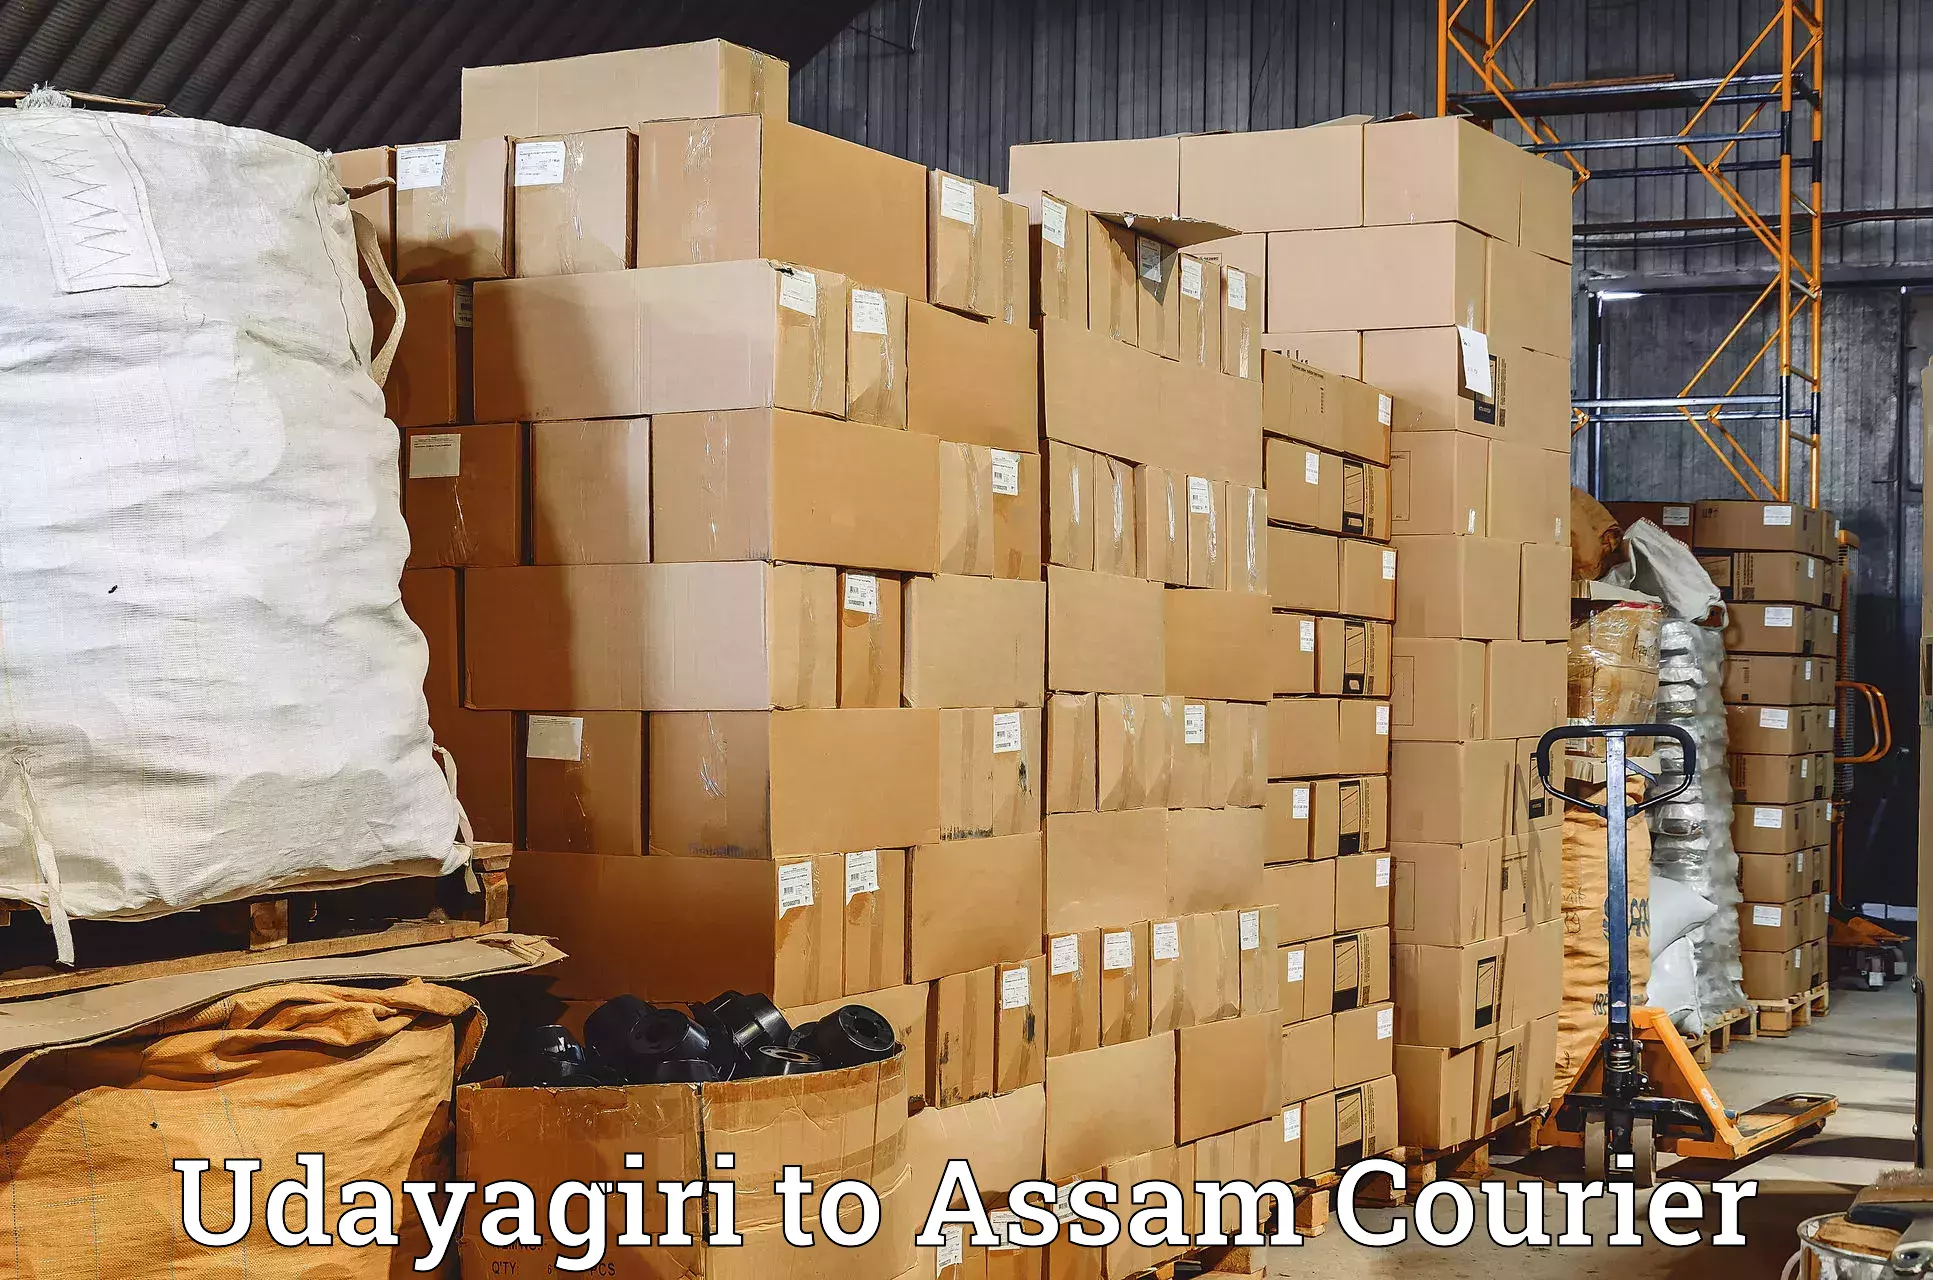 Global courier networks Udayagiri to Agomani